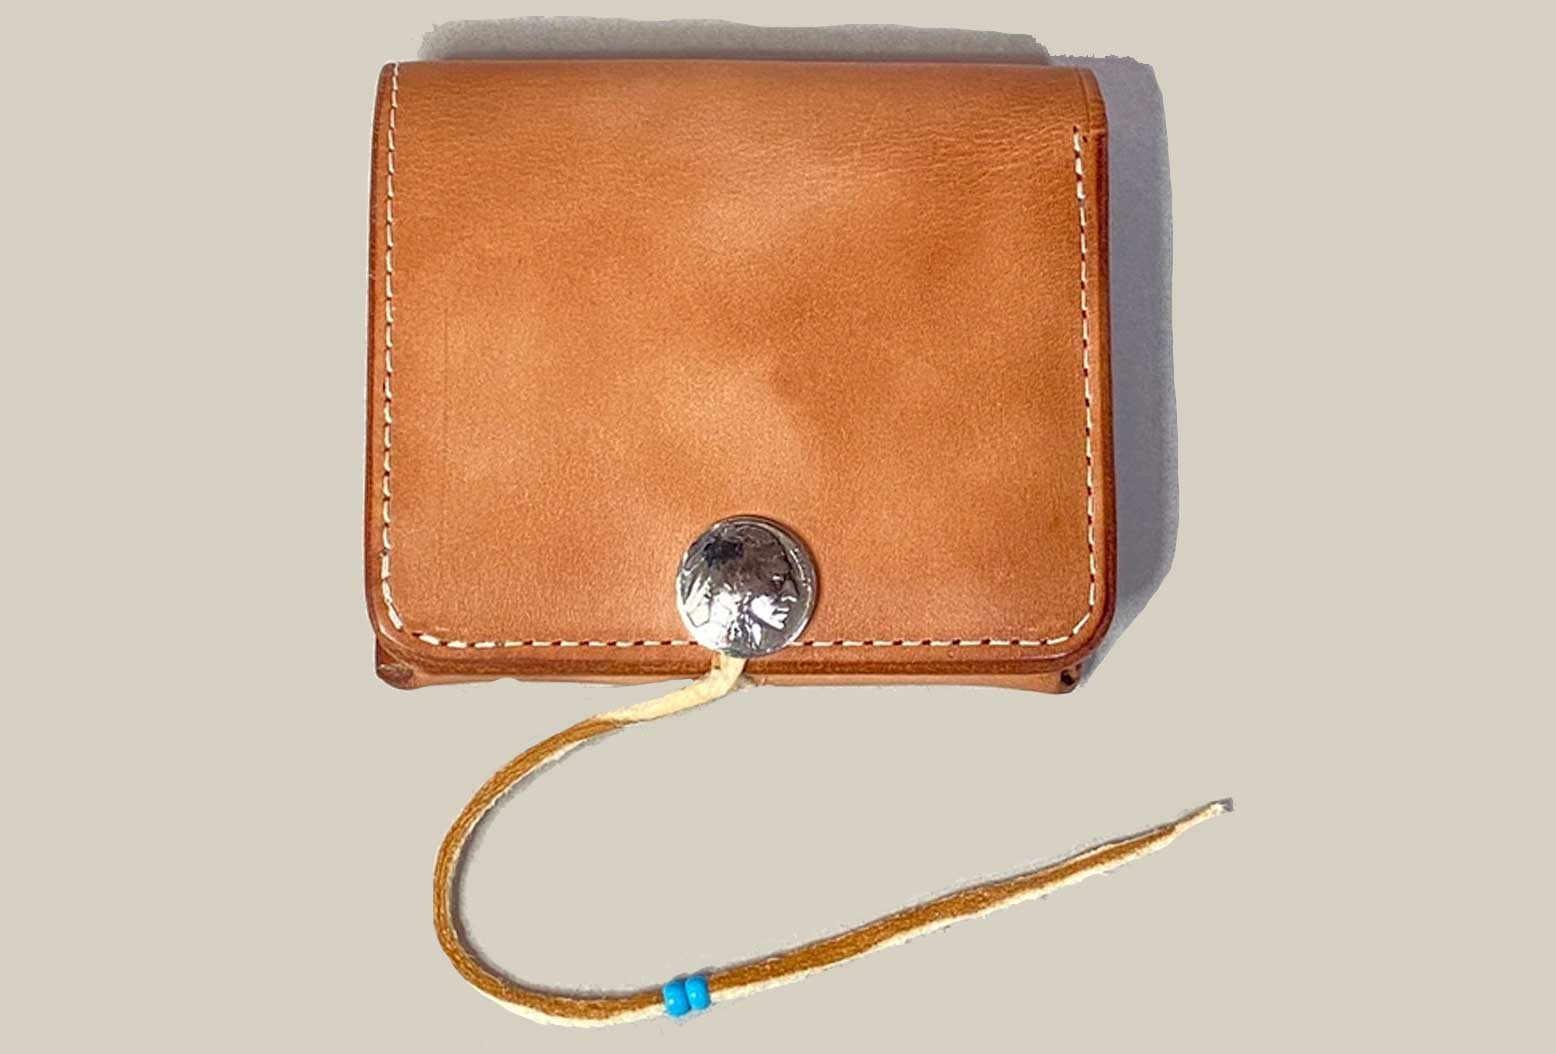 【Koudlka Leather(クーデルカ レザー)】【b-3a】ビルフォード 2つ折り財布